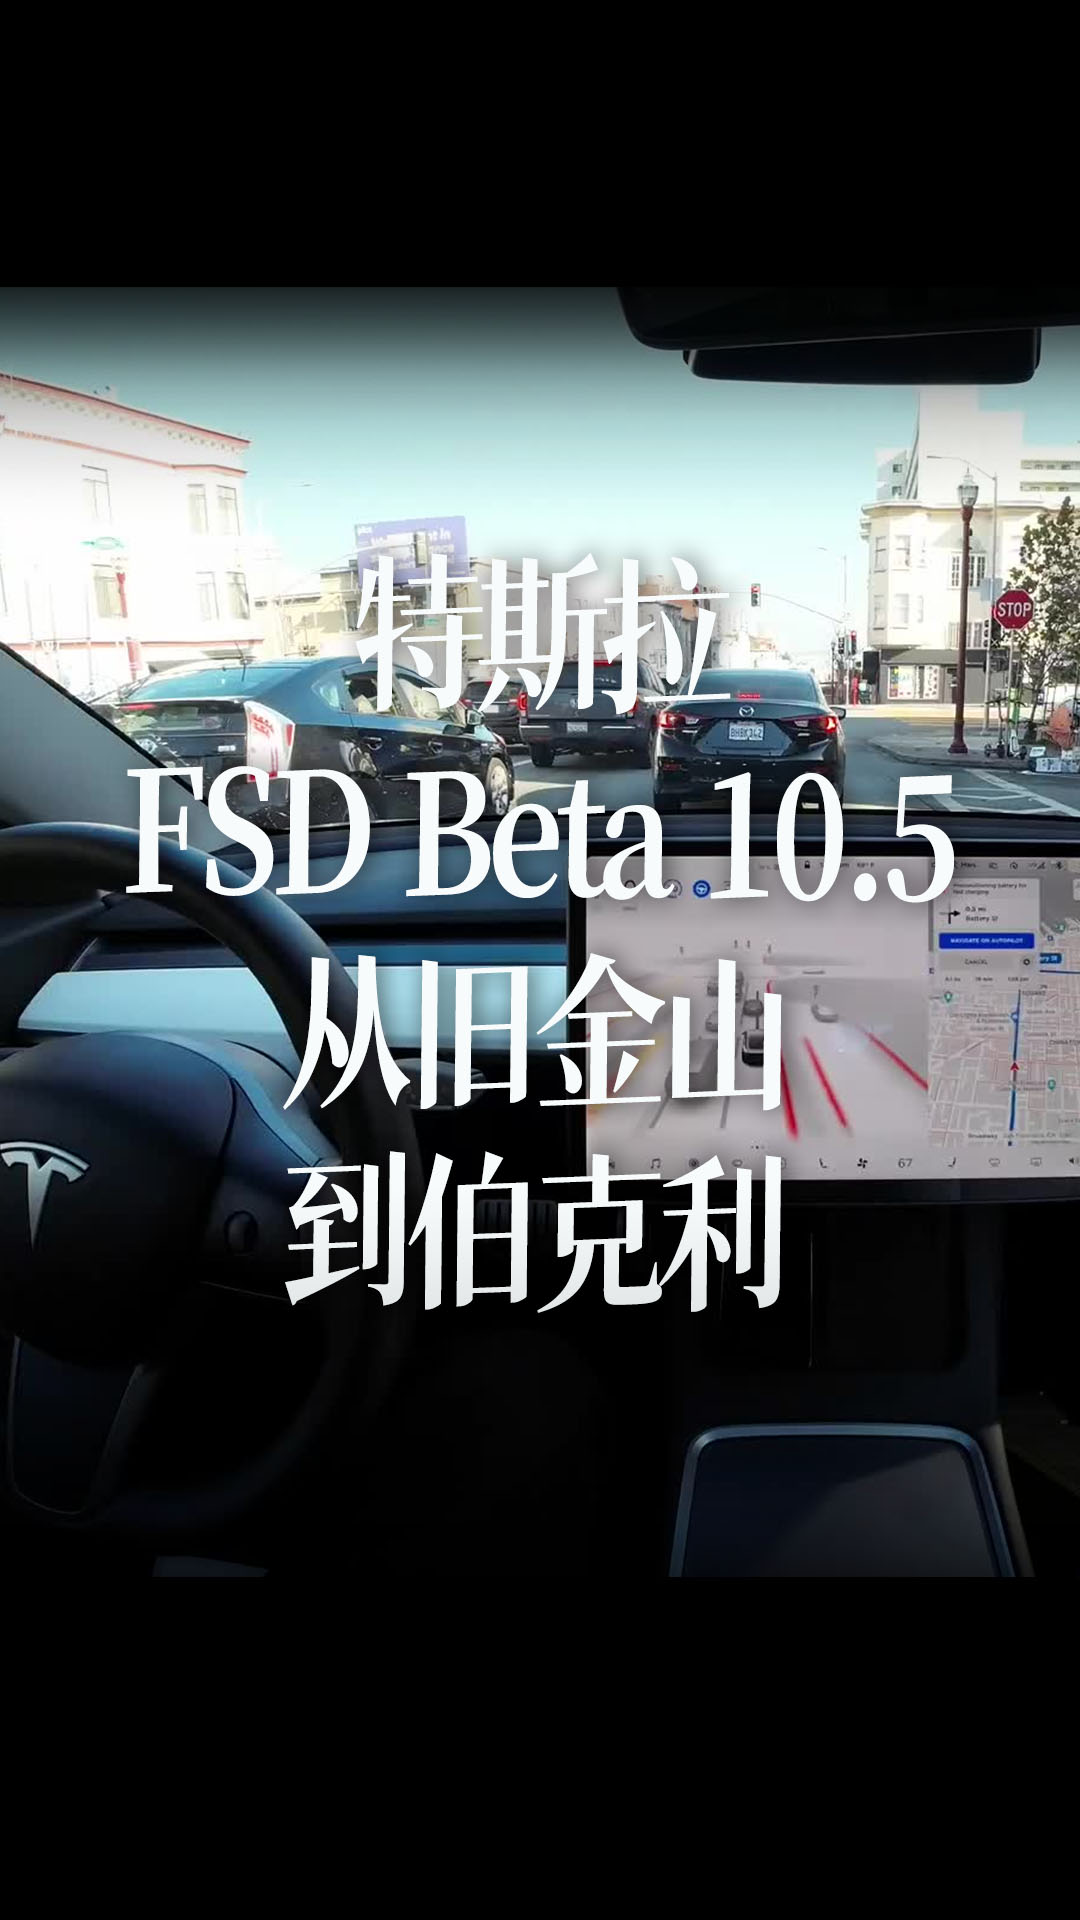 特斯拉FSD Beta 10.5从旧金山到伯克利 